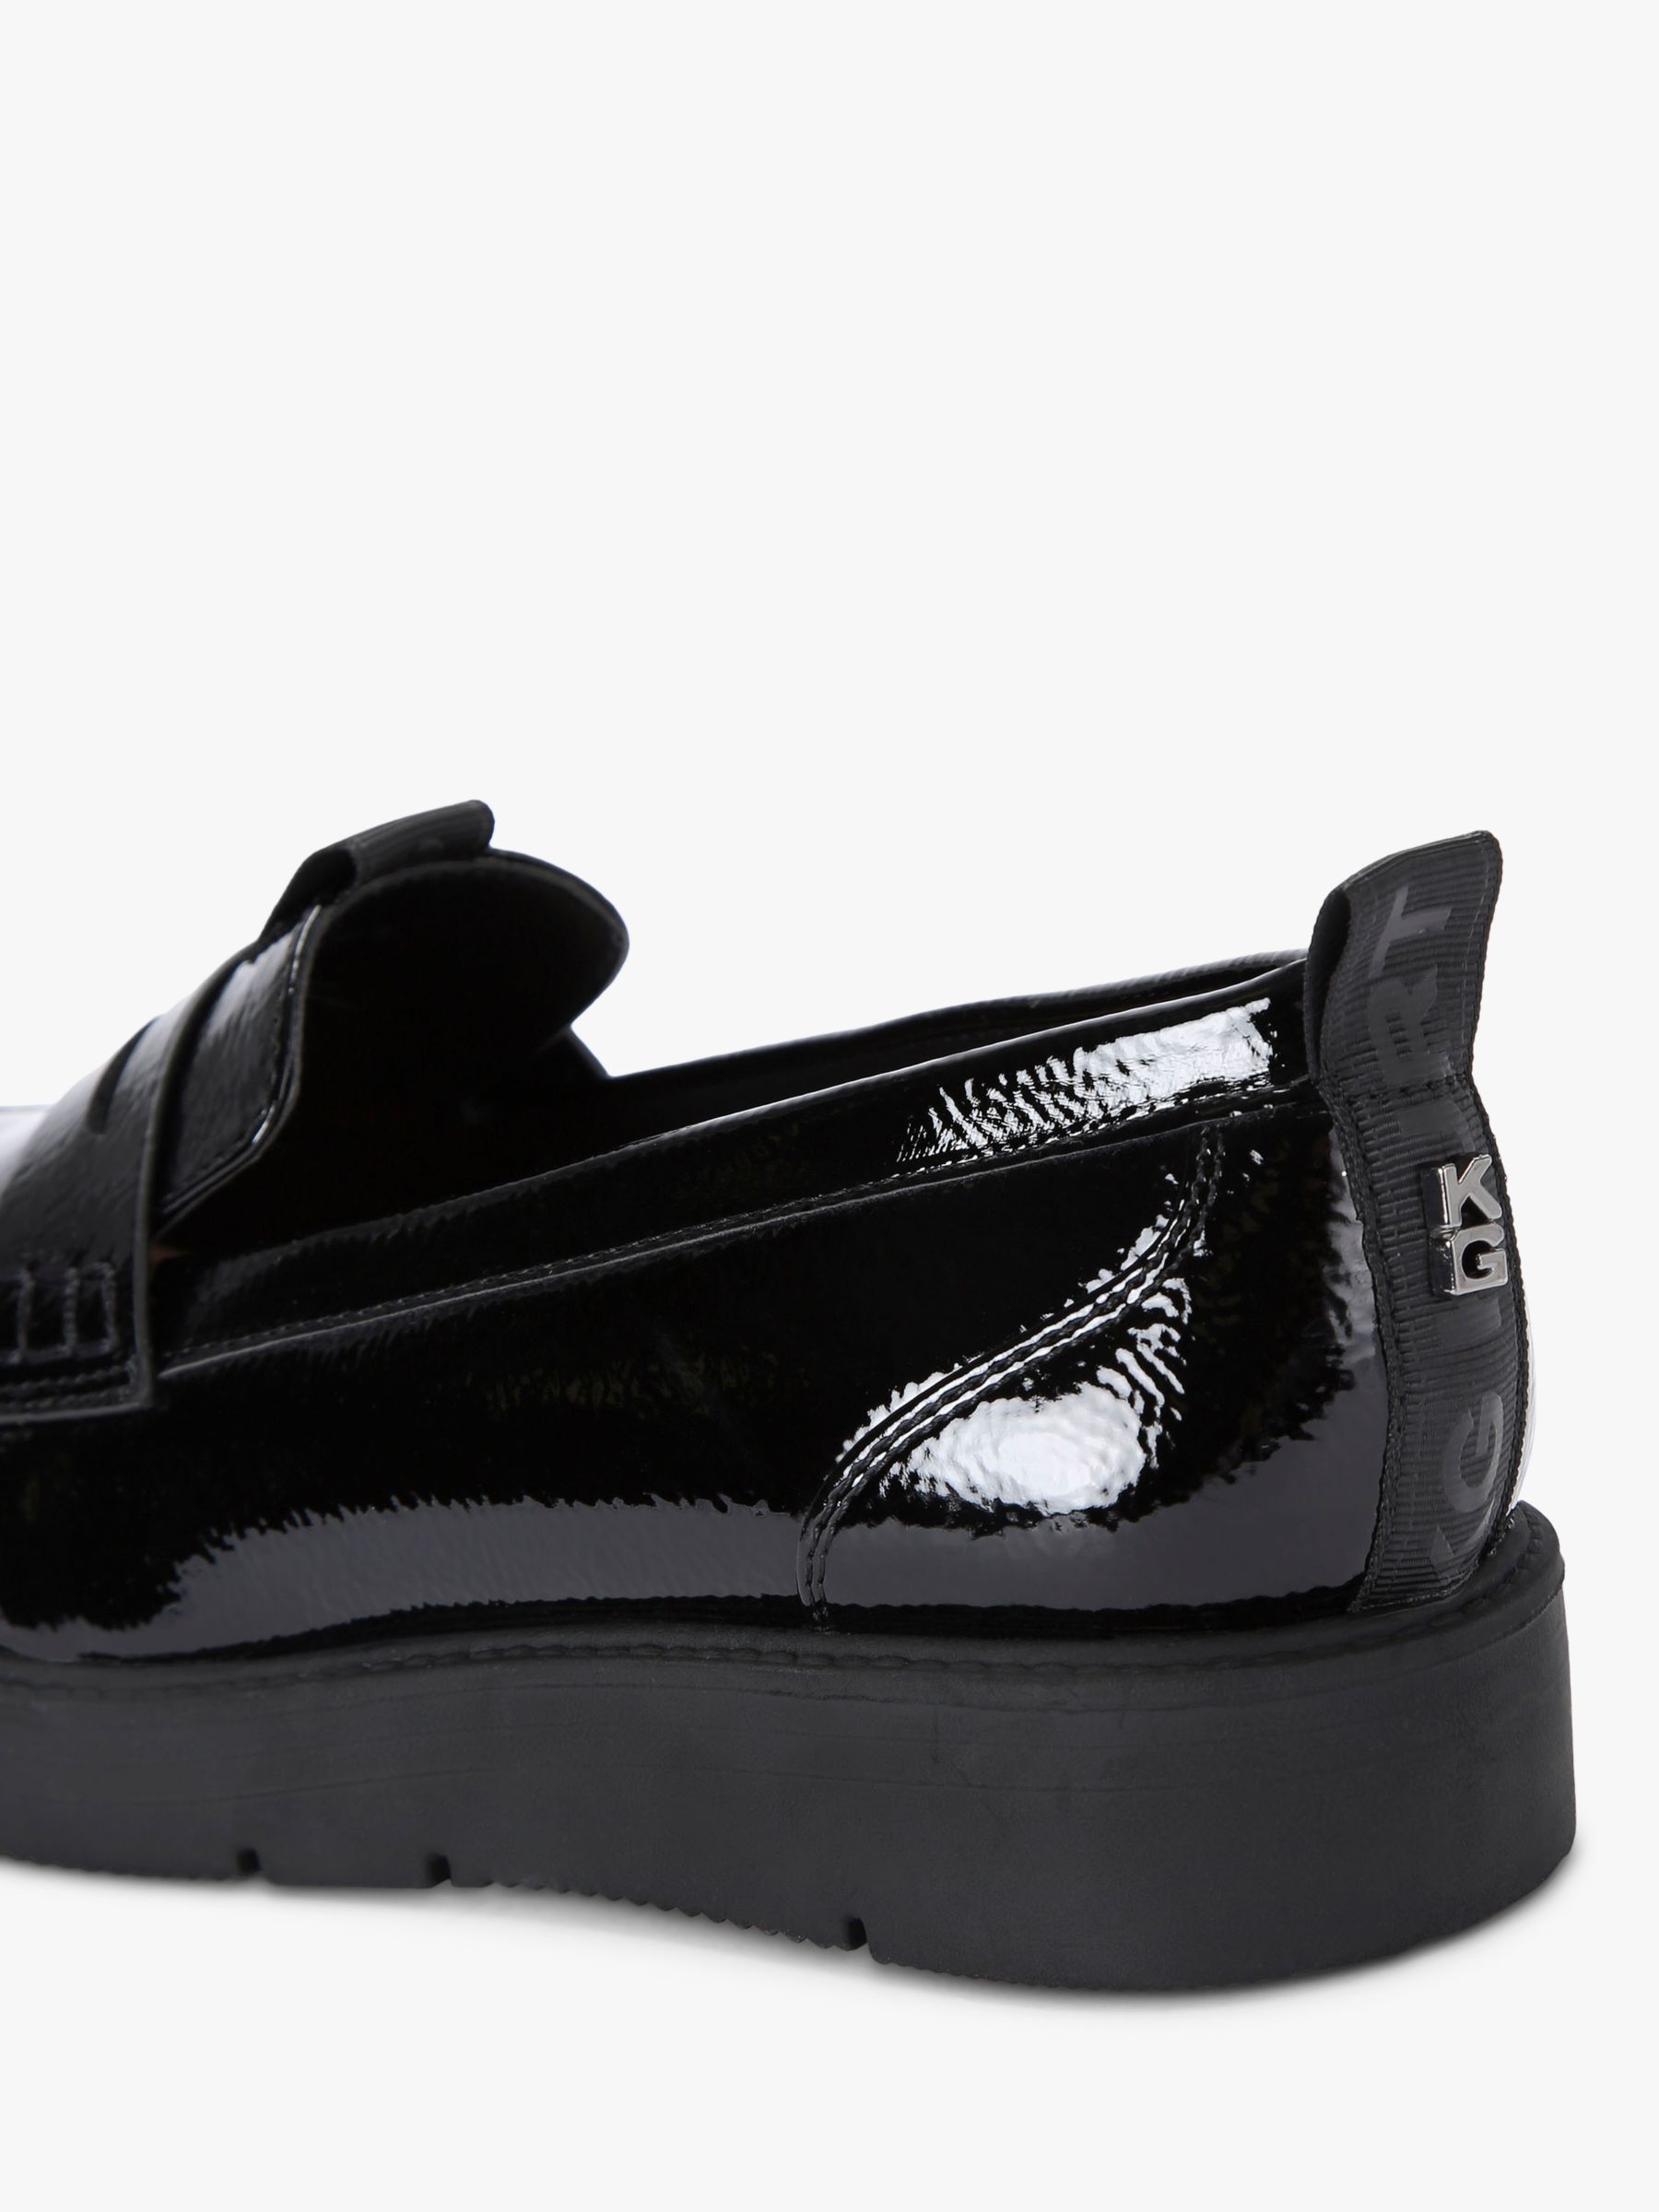 Buy KG Kurt Geiger Maxine Slip On Loafers, Black Online at johnlewis.com